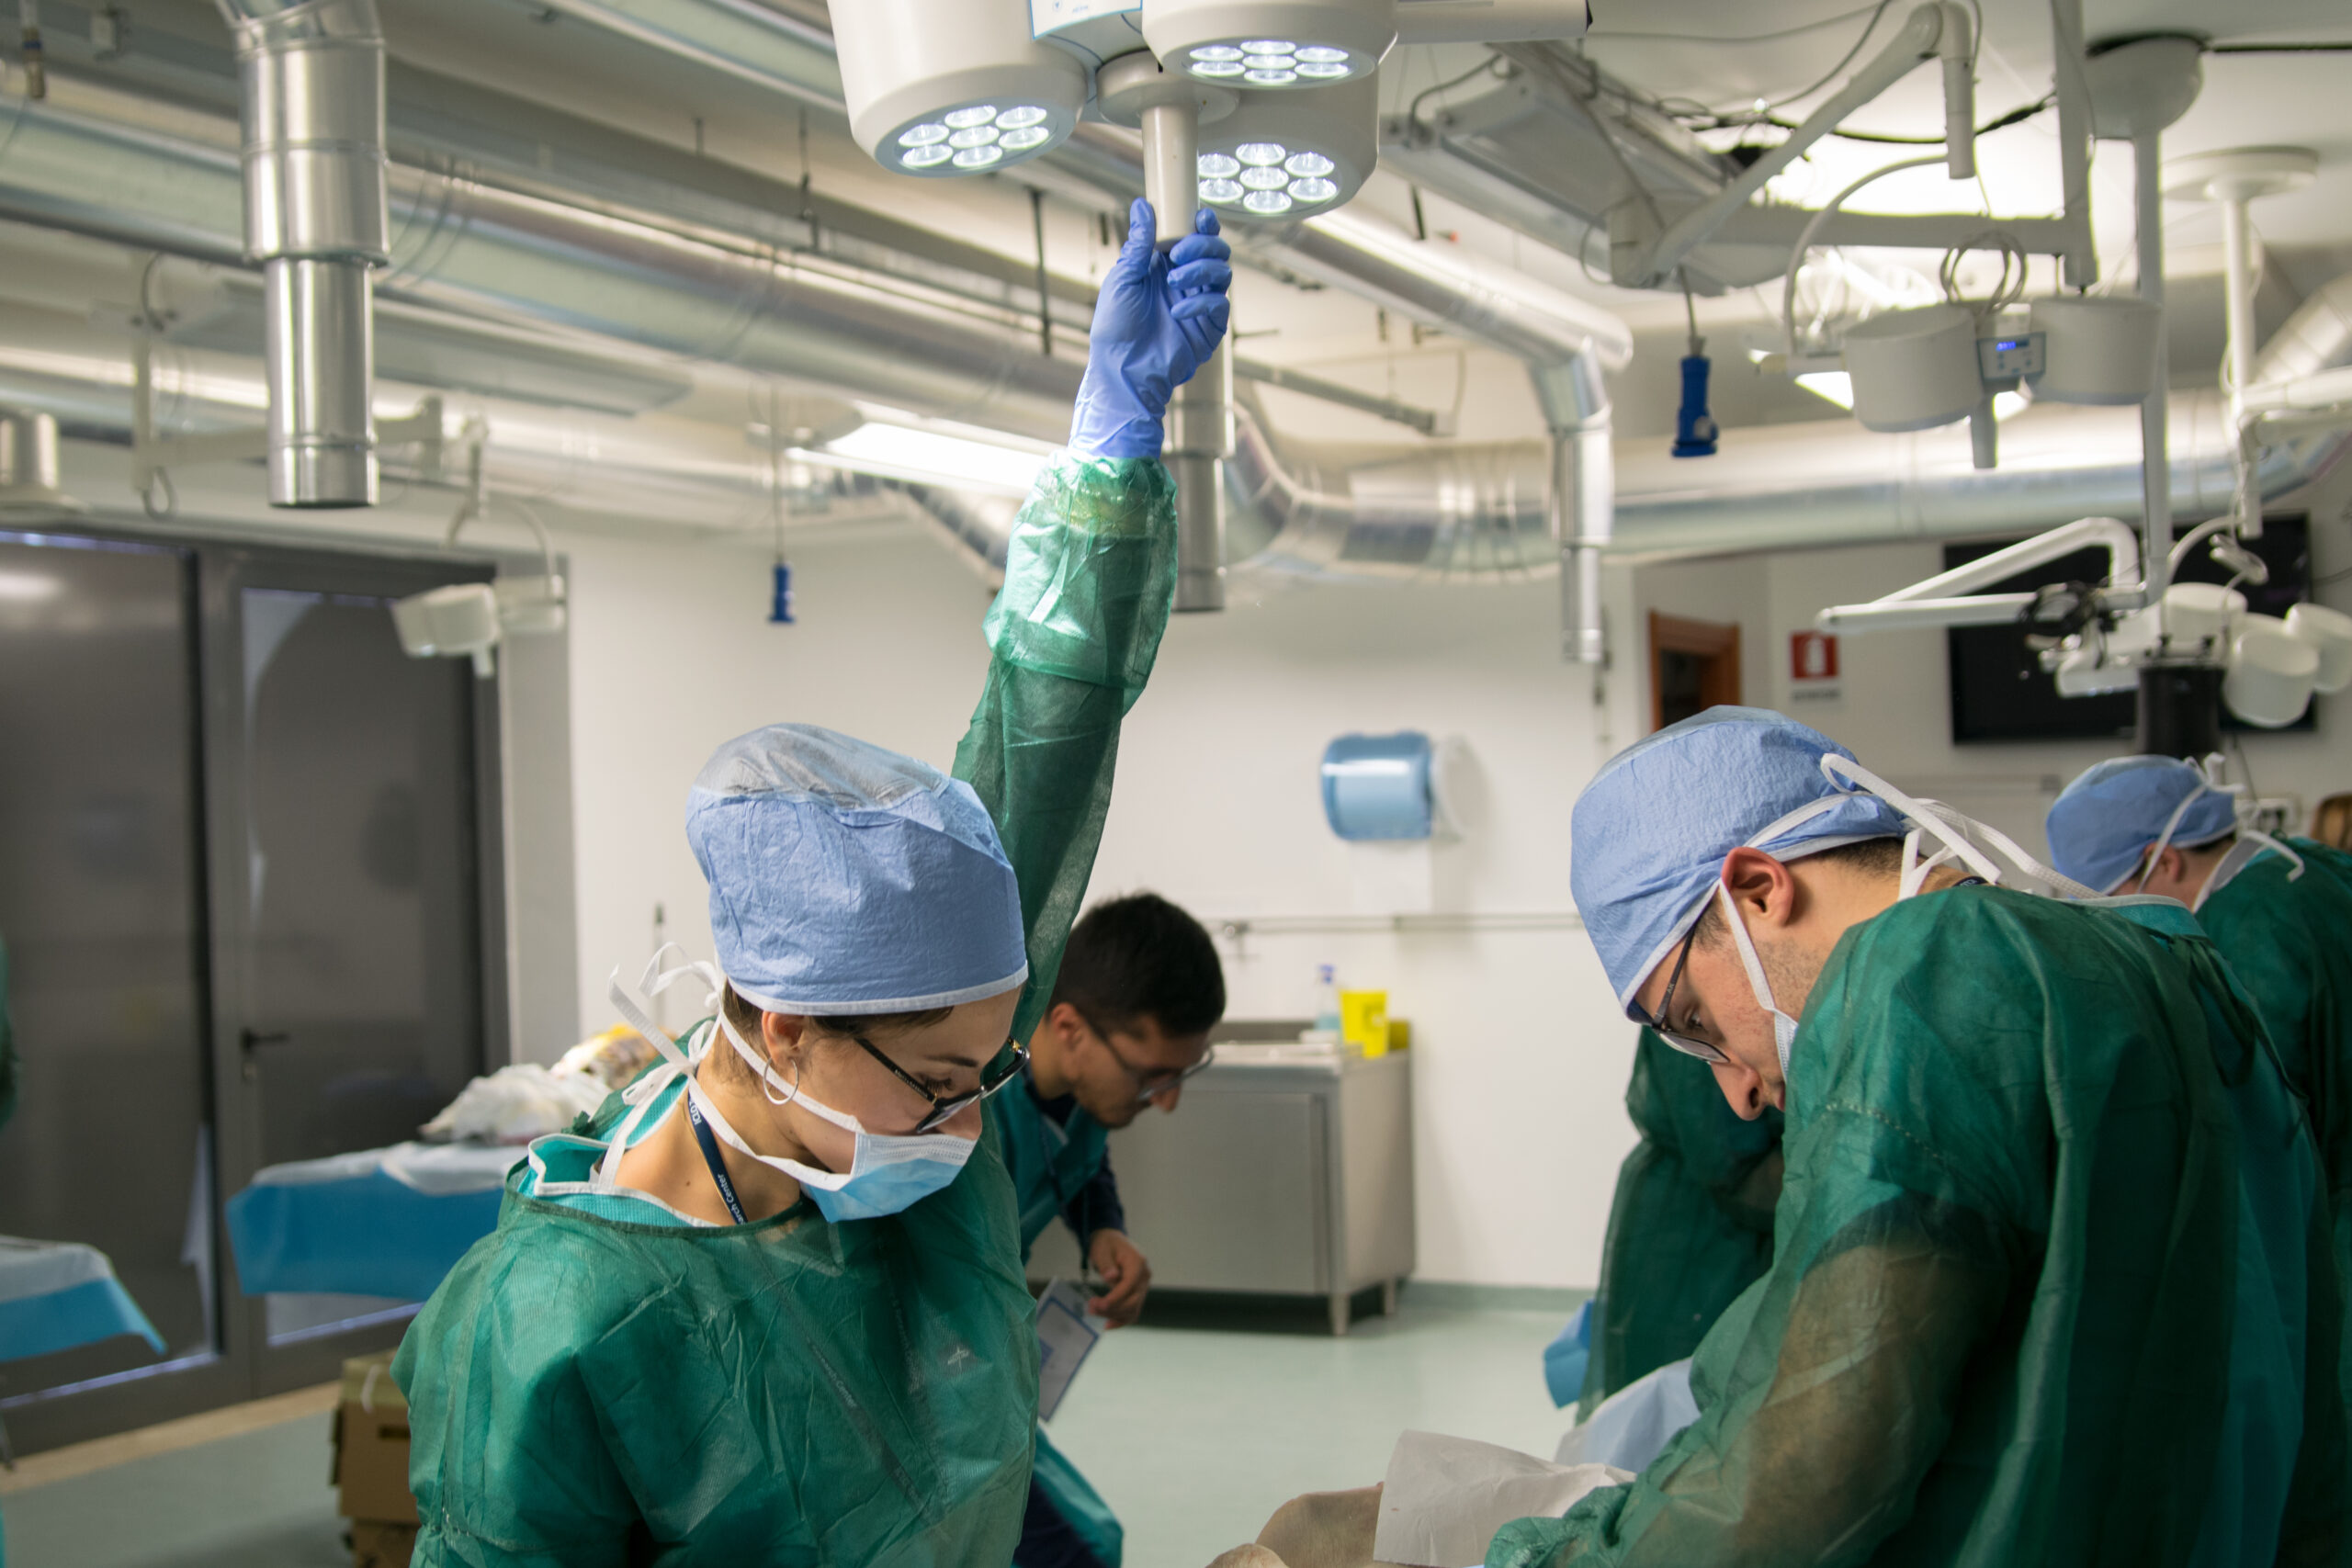 Esplorando il corpo umano: laboratorio di dissezione anatomica